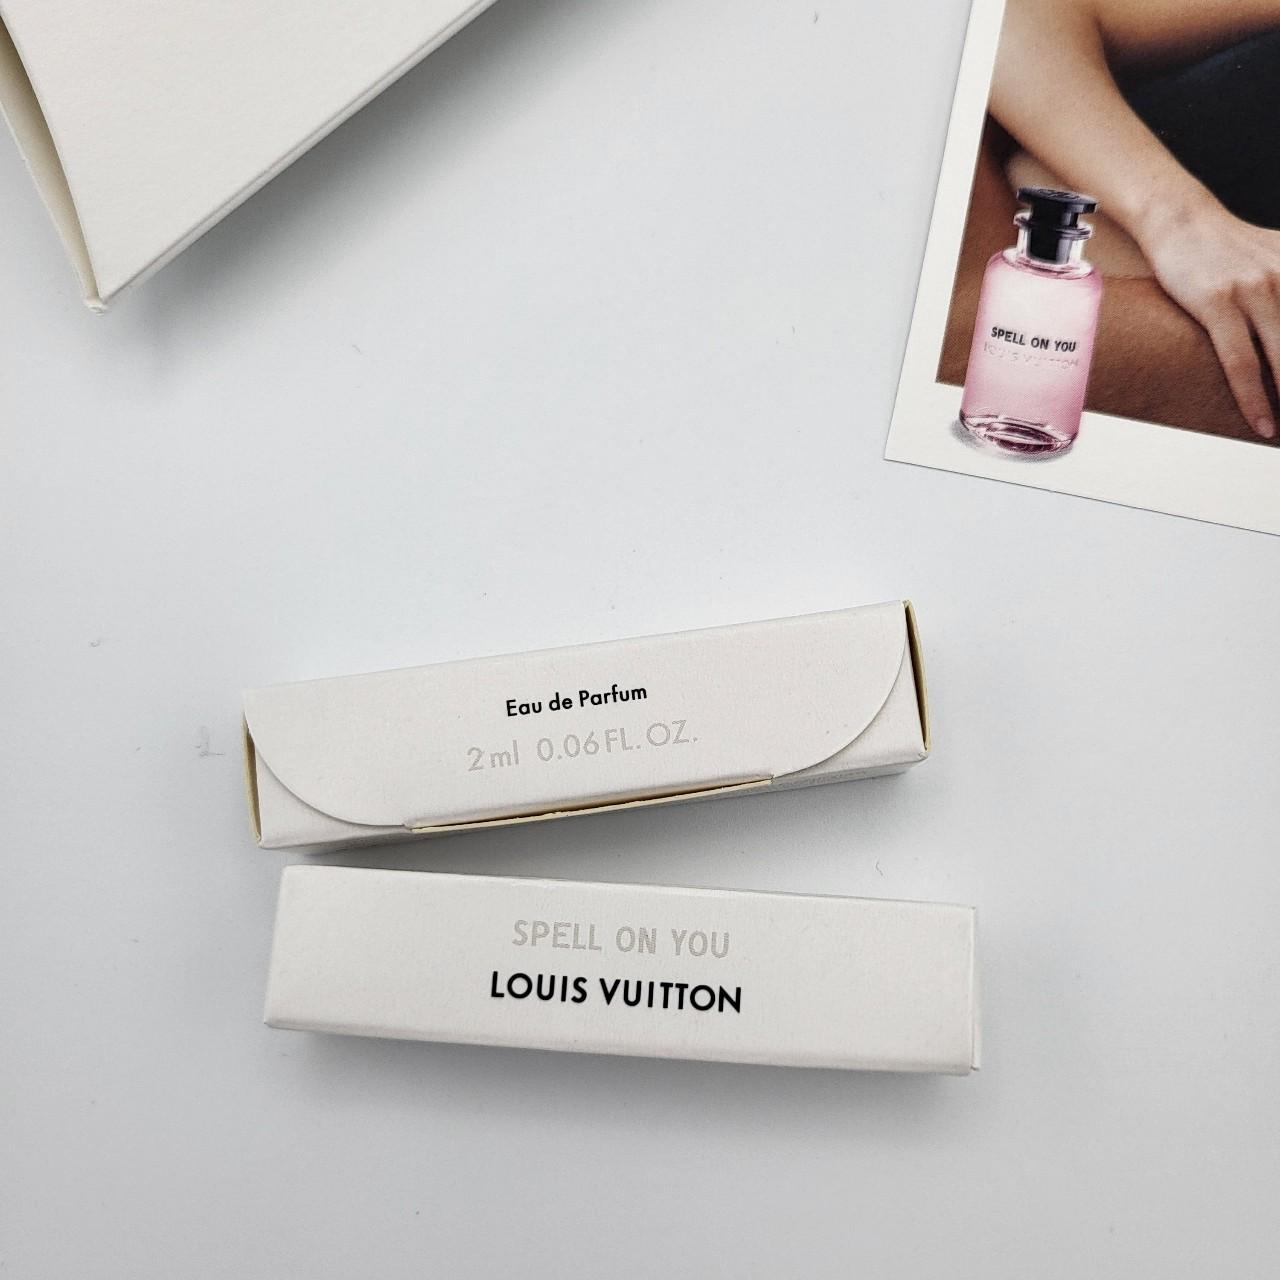 Louis Vuitton Eau de Parfum Sample 2ml 0.06 fl oz SPELL ON YOU NEW